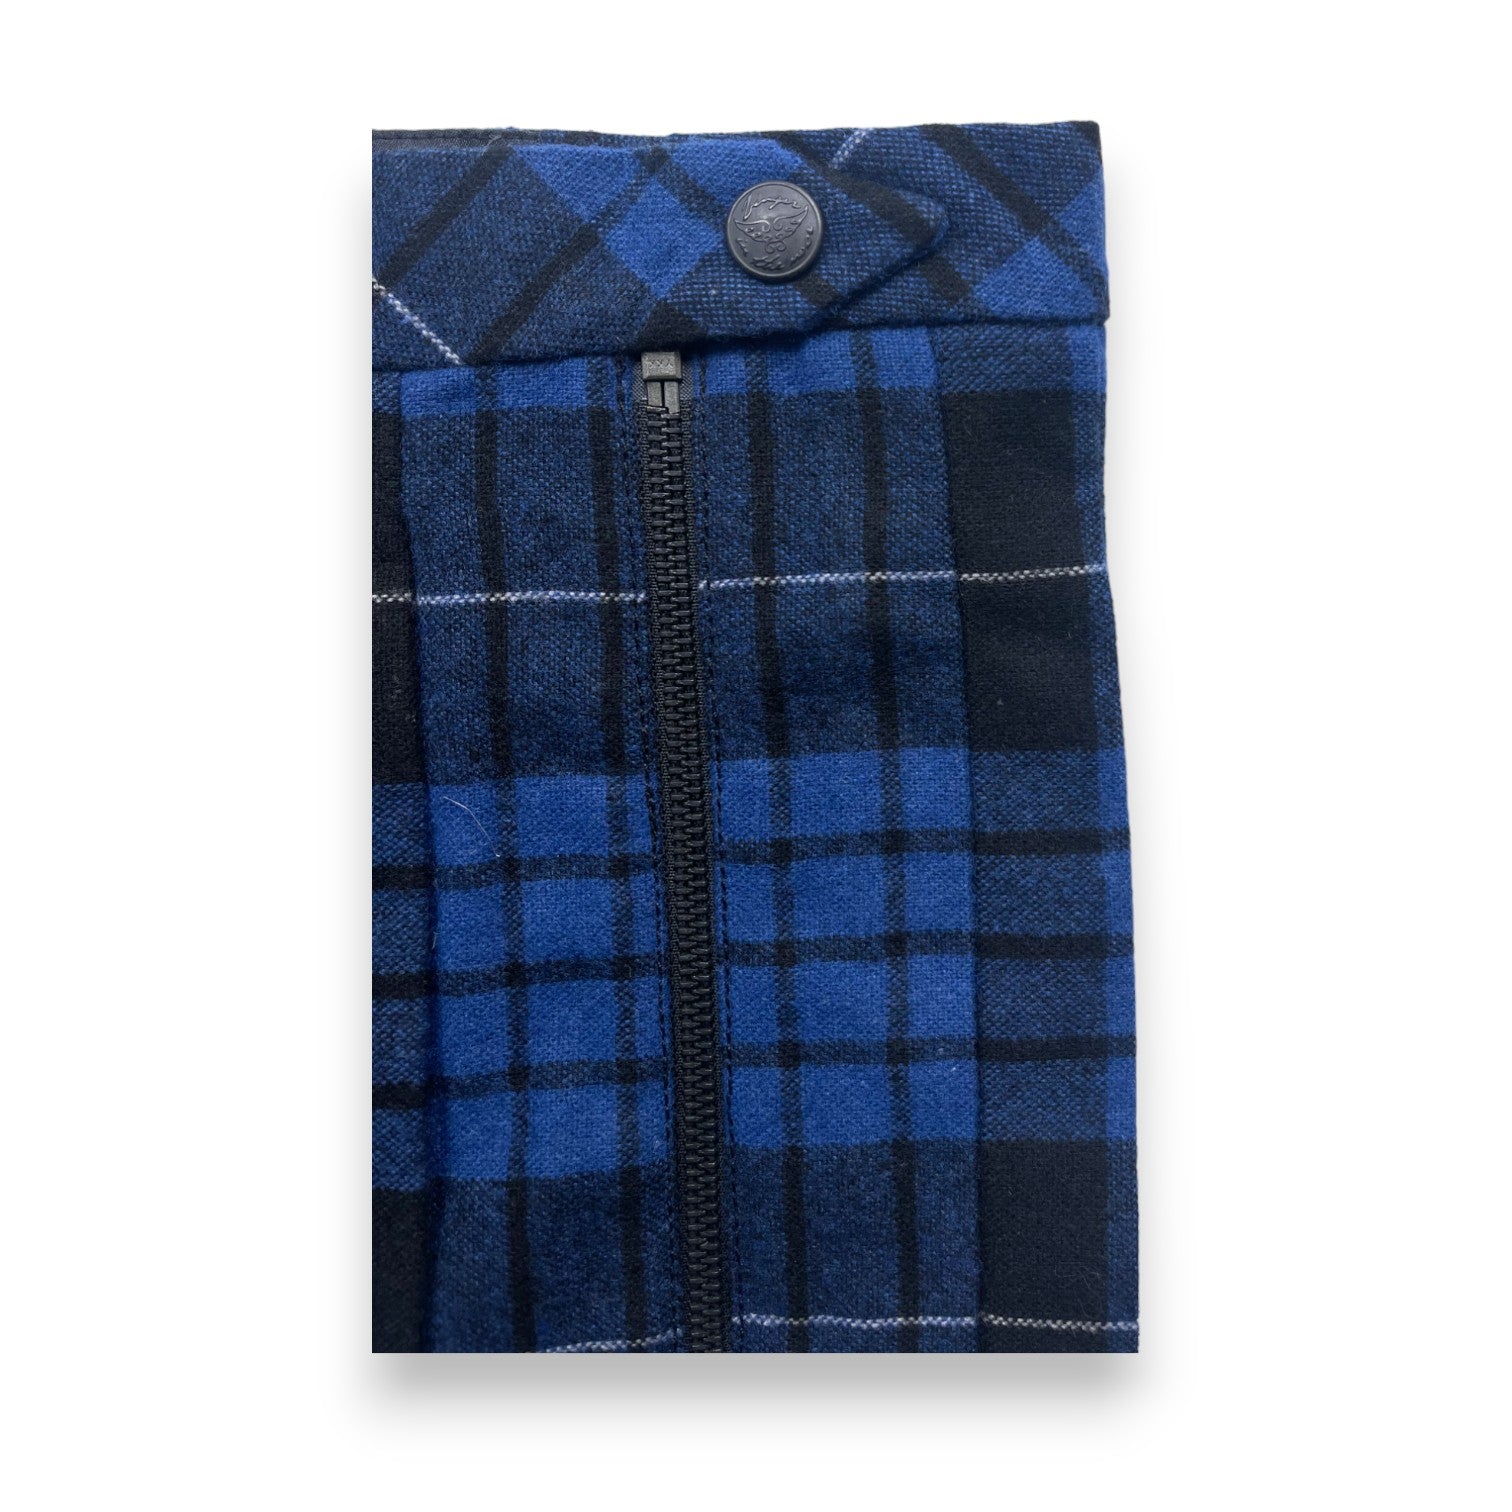 FINGER IN THE NOSE - Jupe en laine à carreaux bleue et noire (neuf) - 2/3 ans